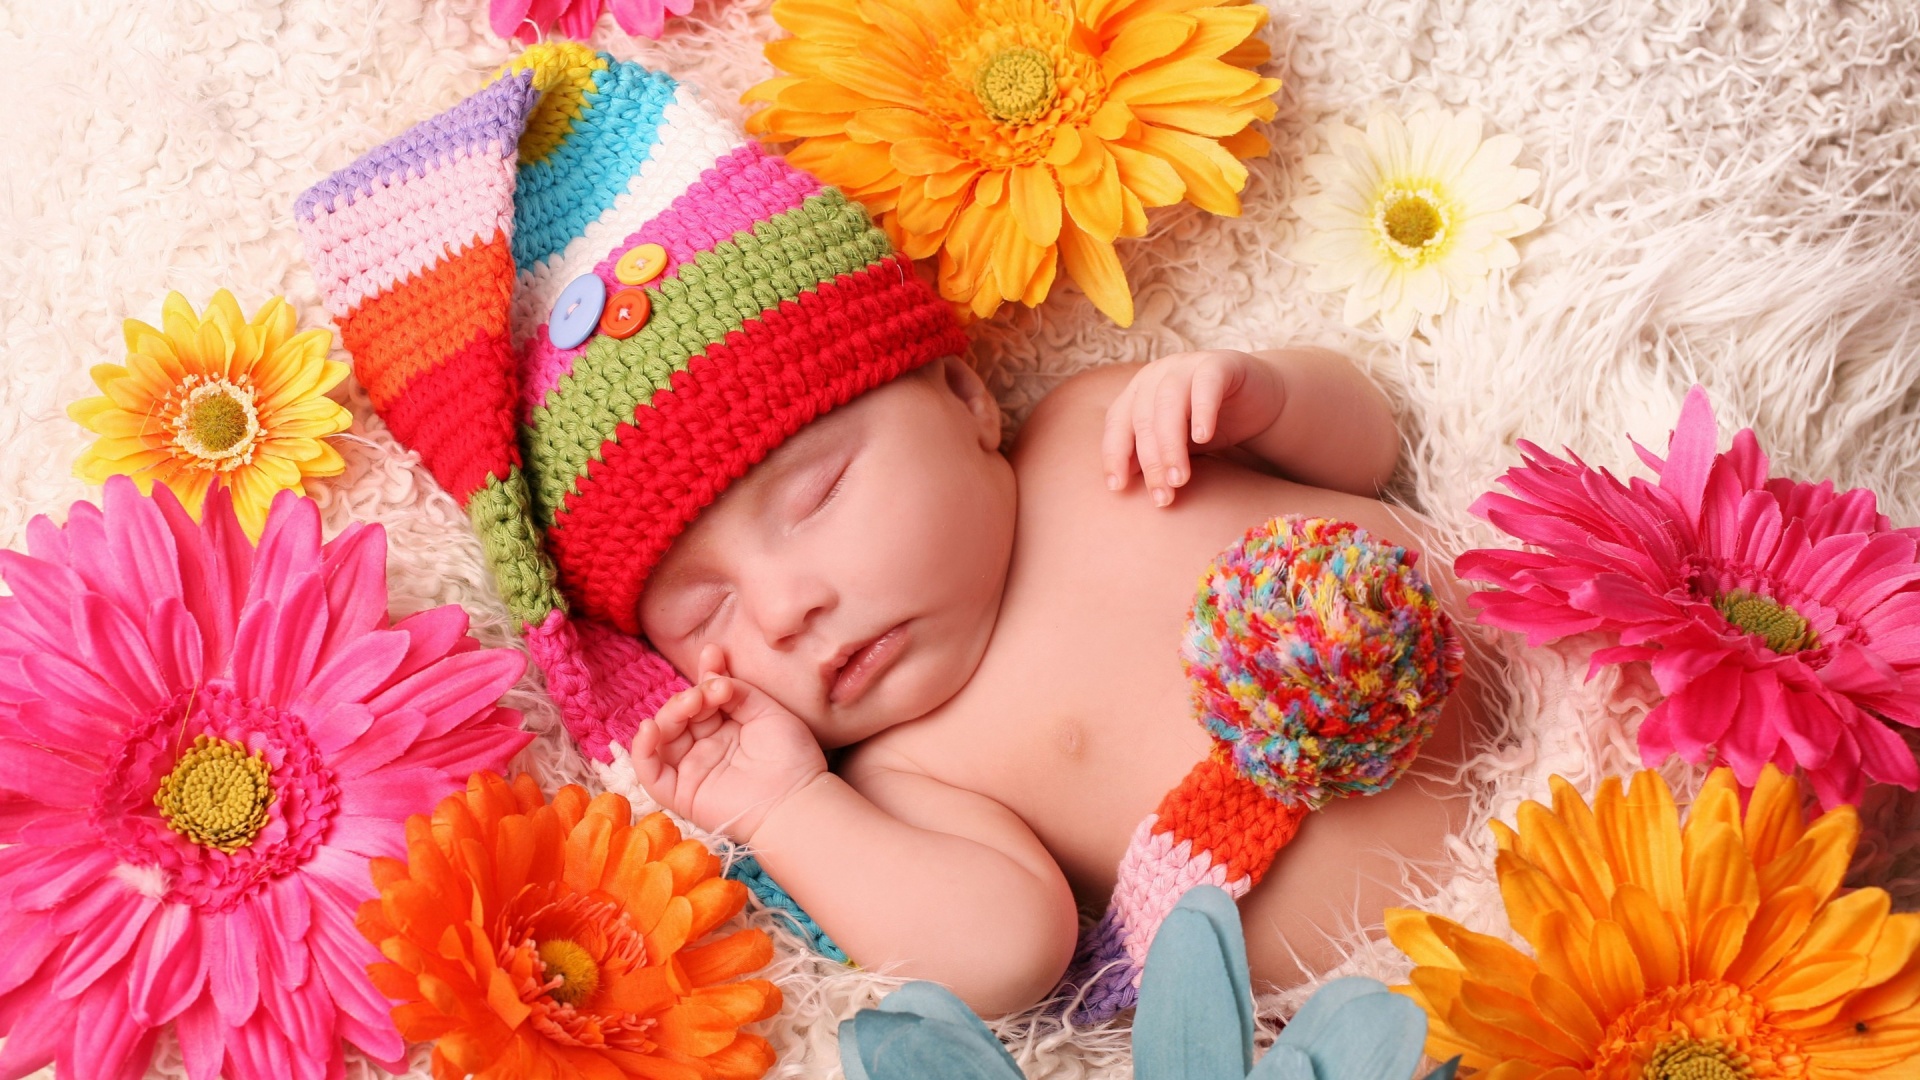 Baby Sleeping Gerbera Flowers - Good Night In Flowers - HD Wallpaper 